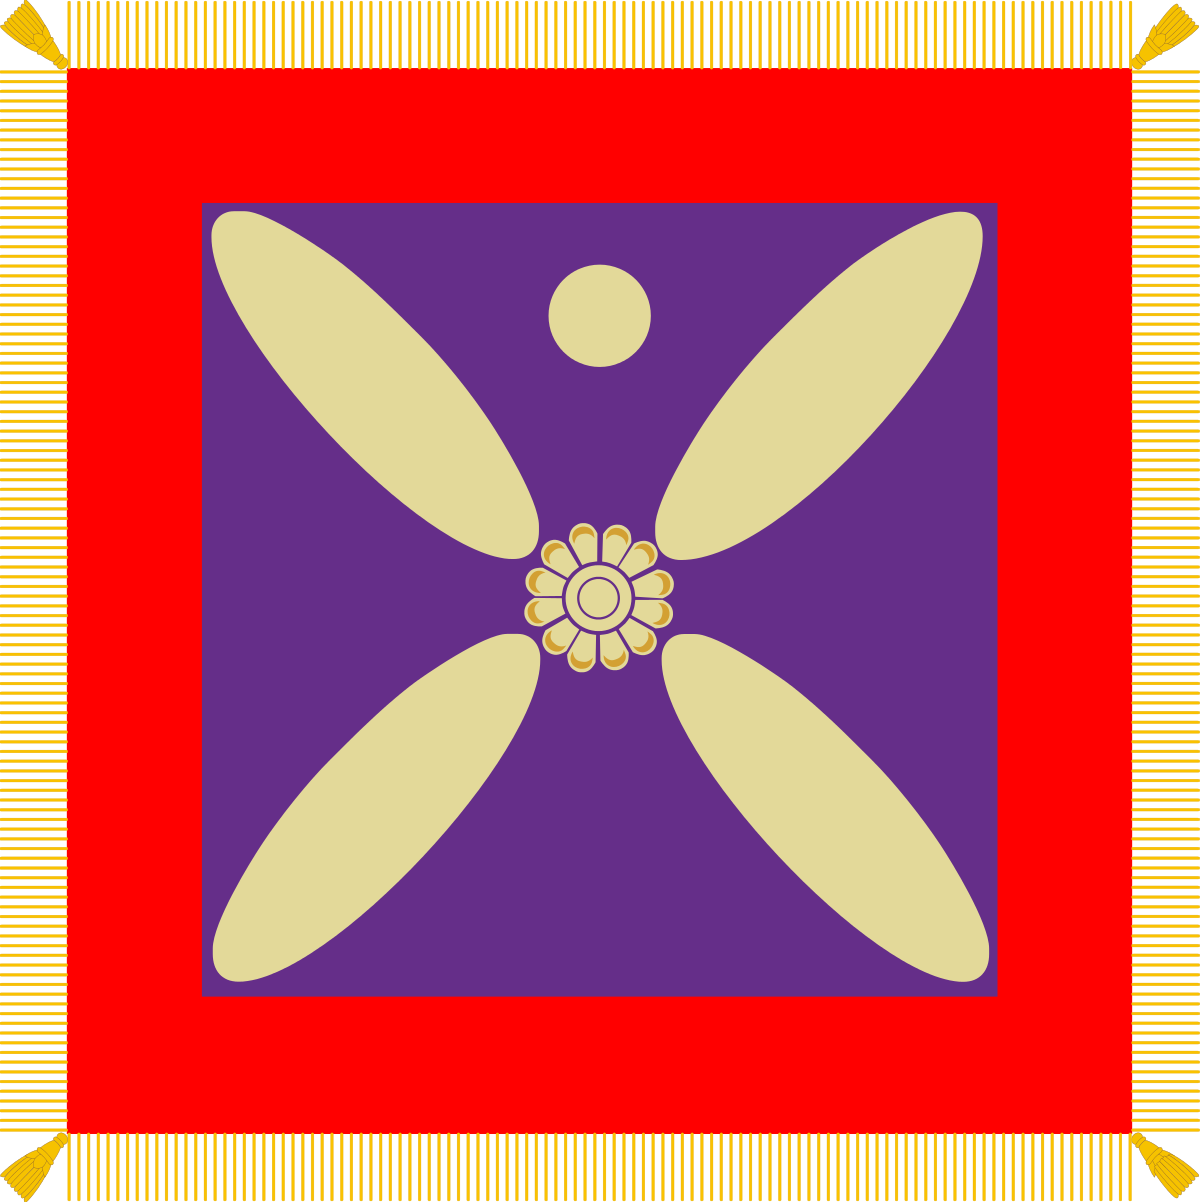 درفش کاویانی، نماد پرچم ساسانیان